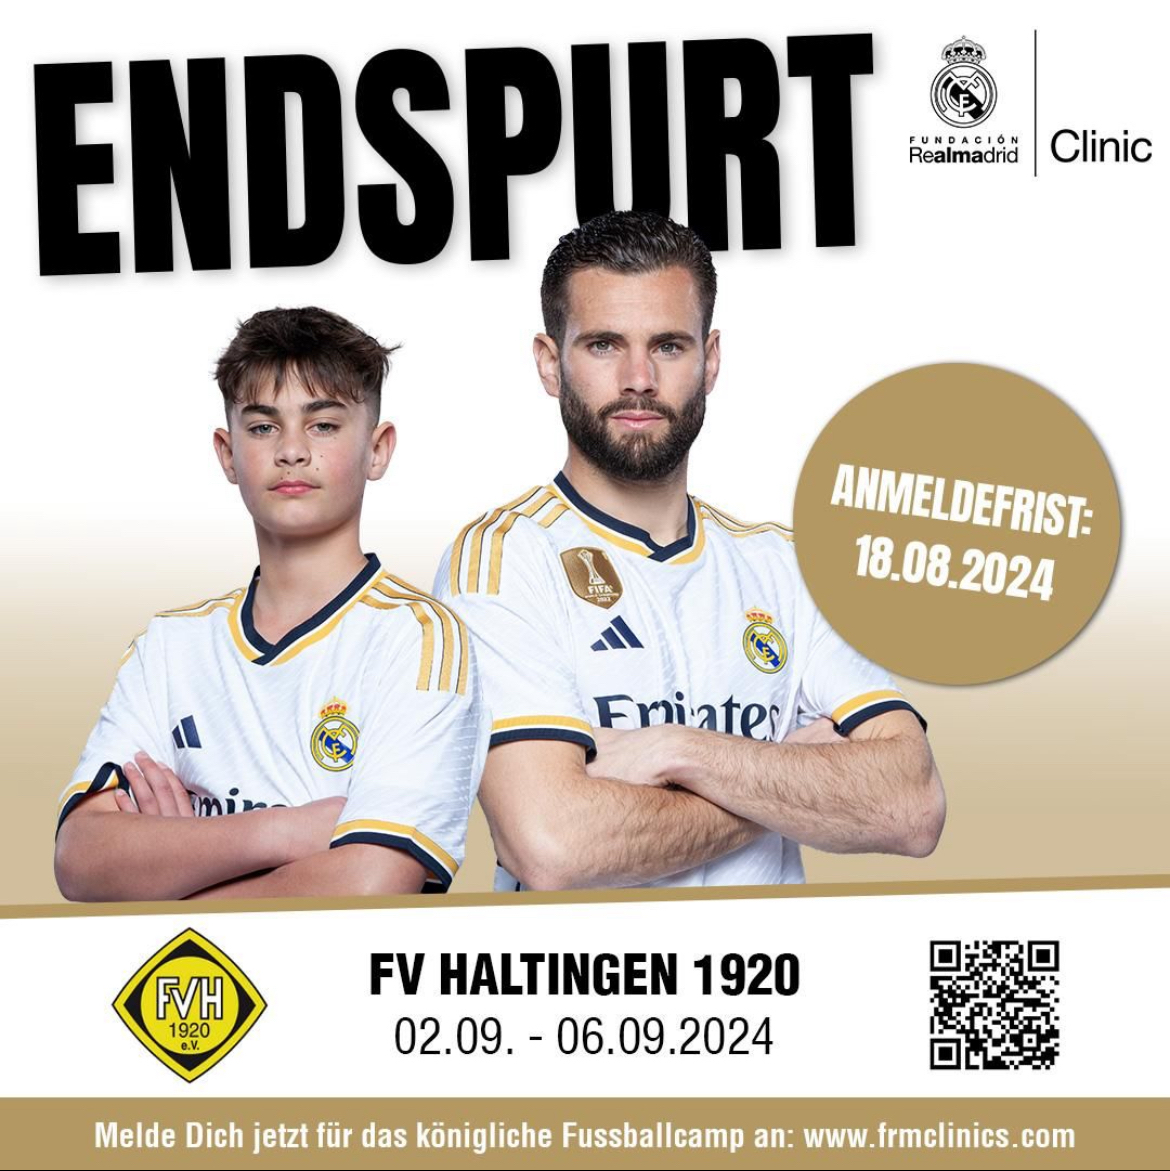 Der Countdown läuft – Die Real Madrid Fußballschule ist zu Gast beim FV Haltingen